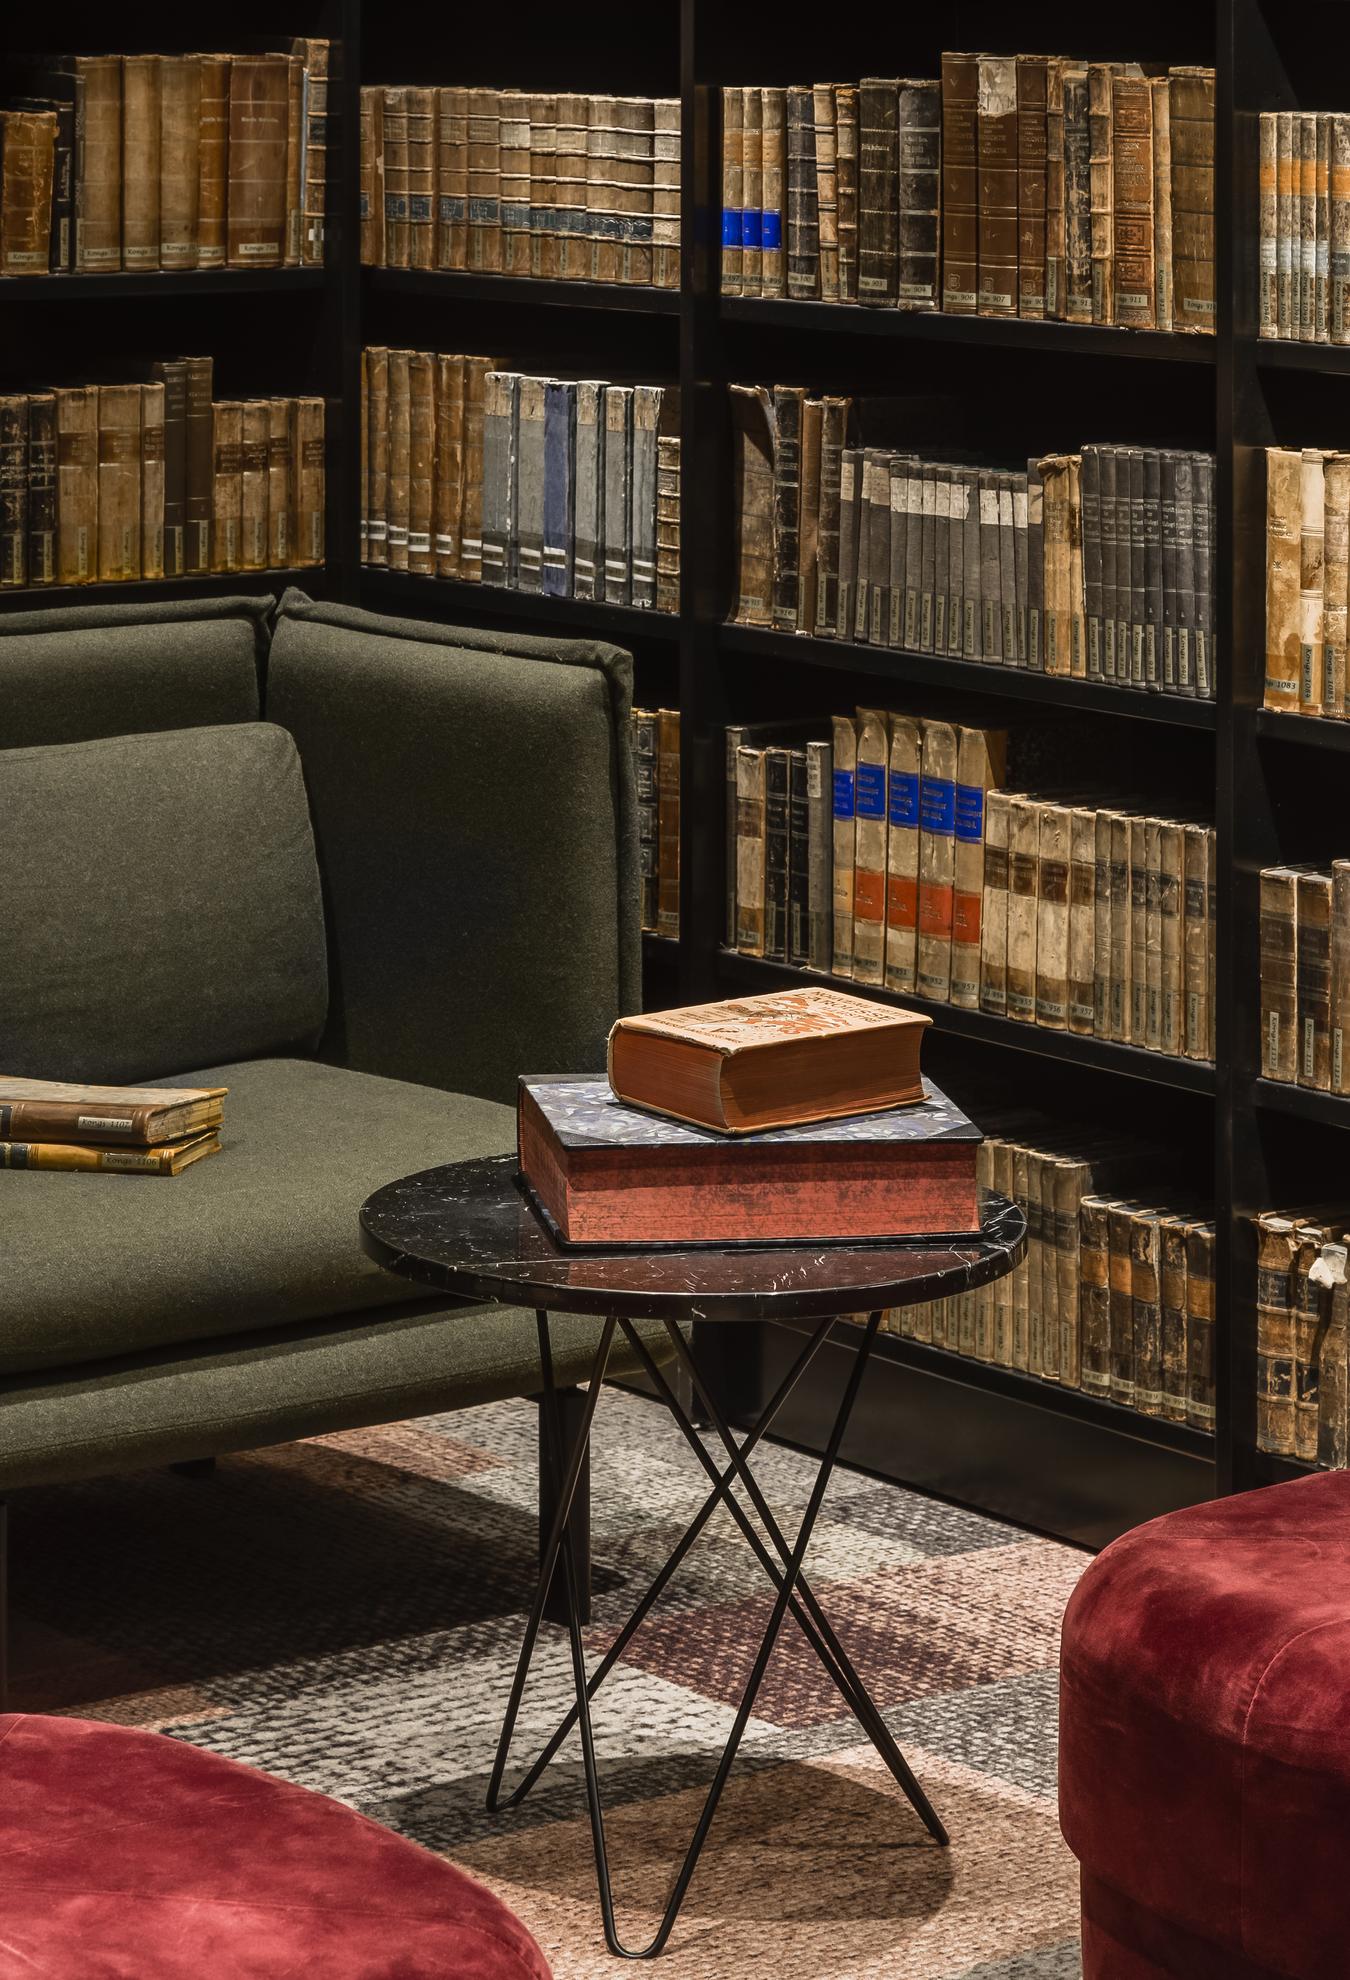 Sofabord og bogreoler med gamle bøger. Foto